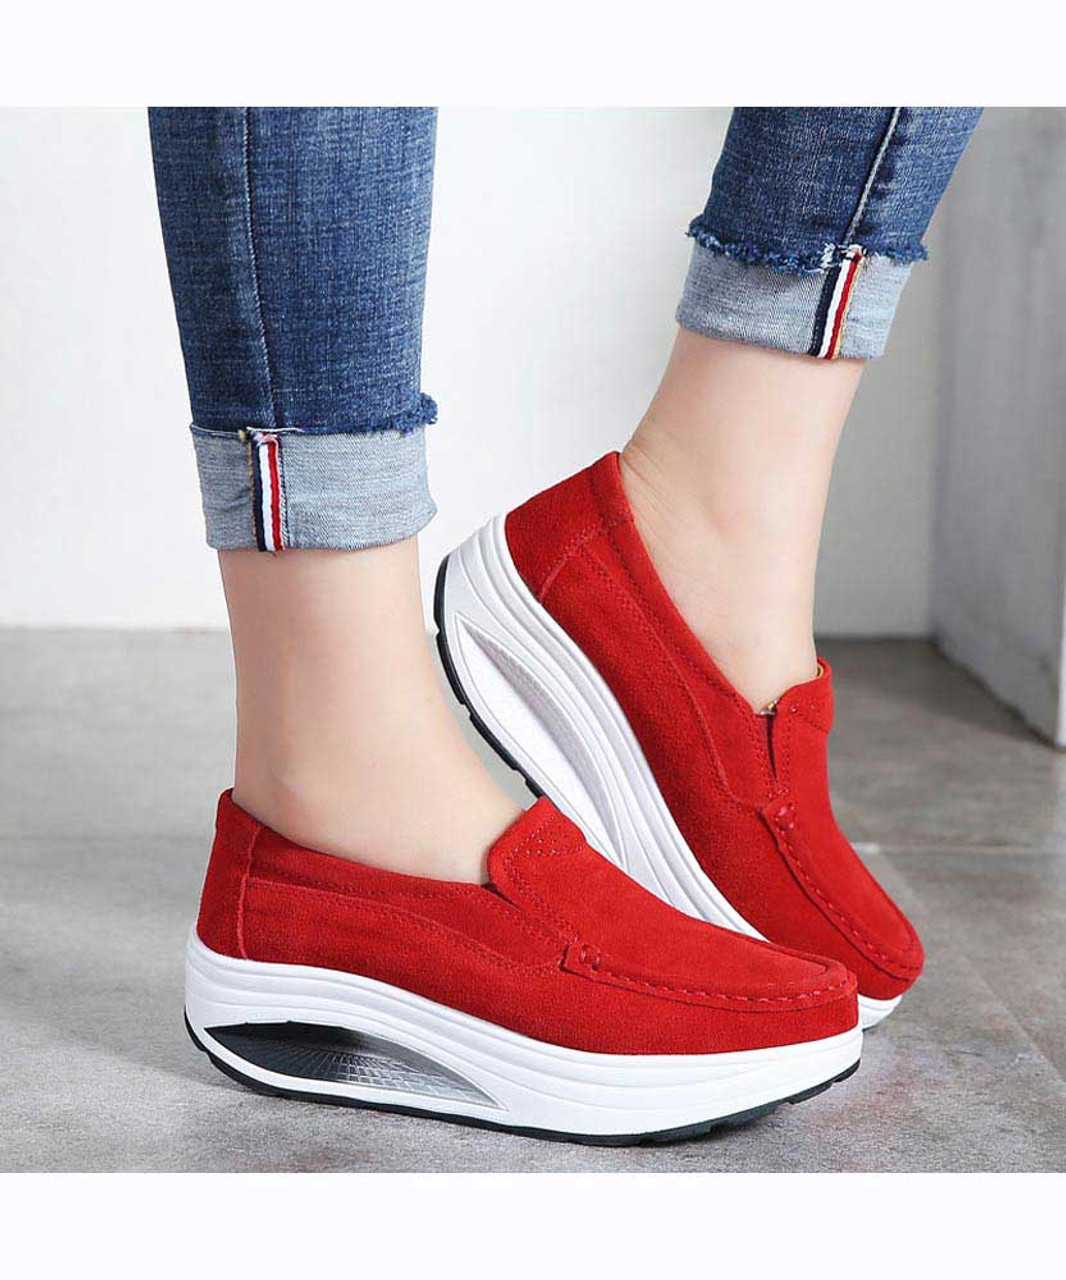 Red hollow slip on rocker bottom shoe sneaker | Womens rocker shoes ...